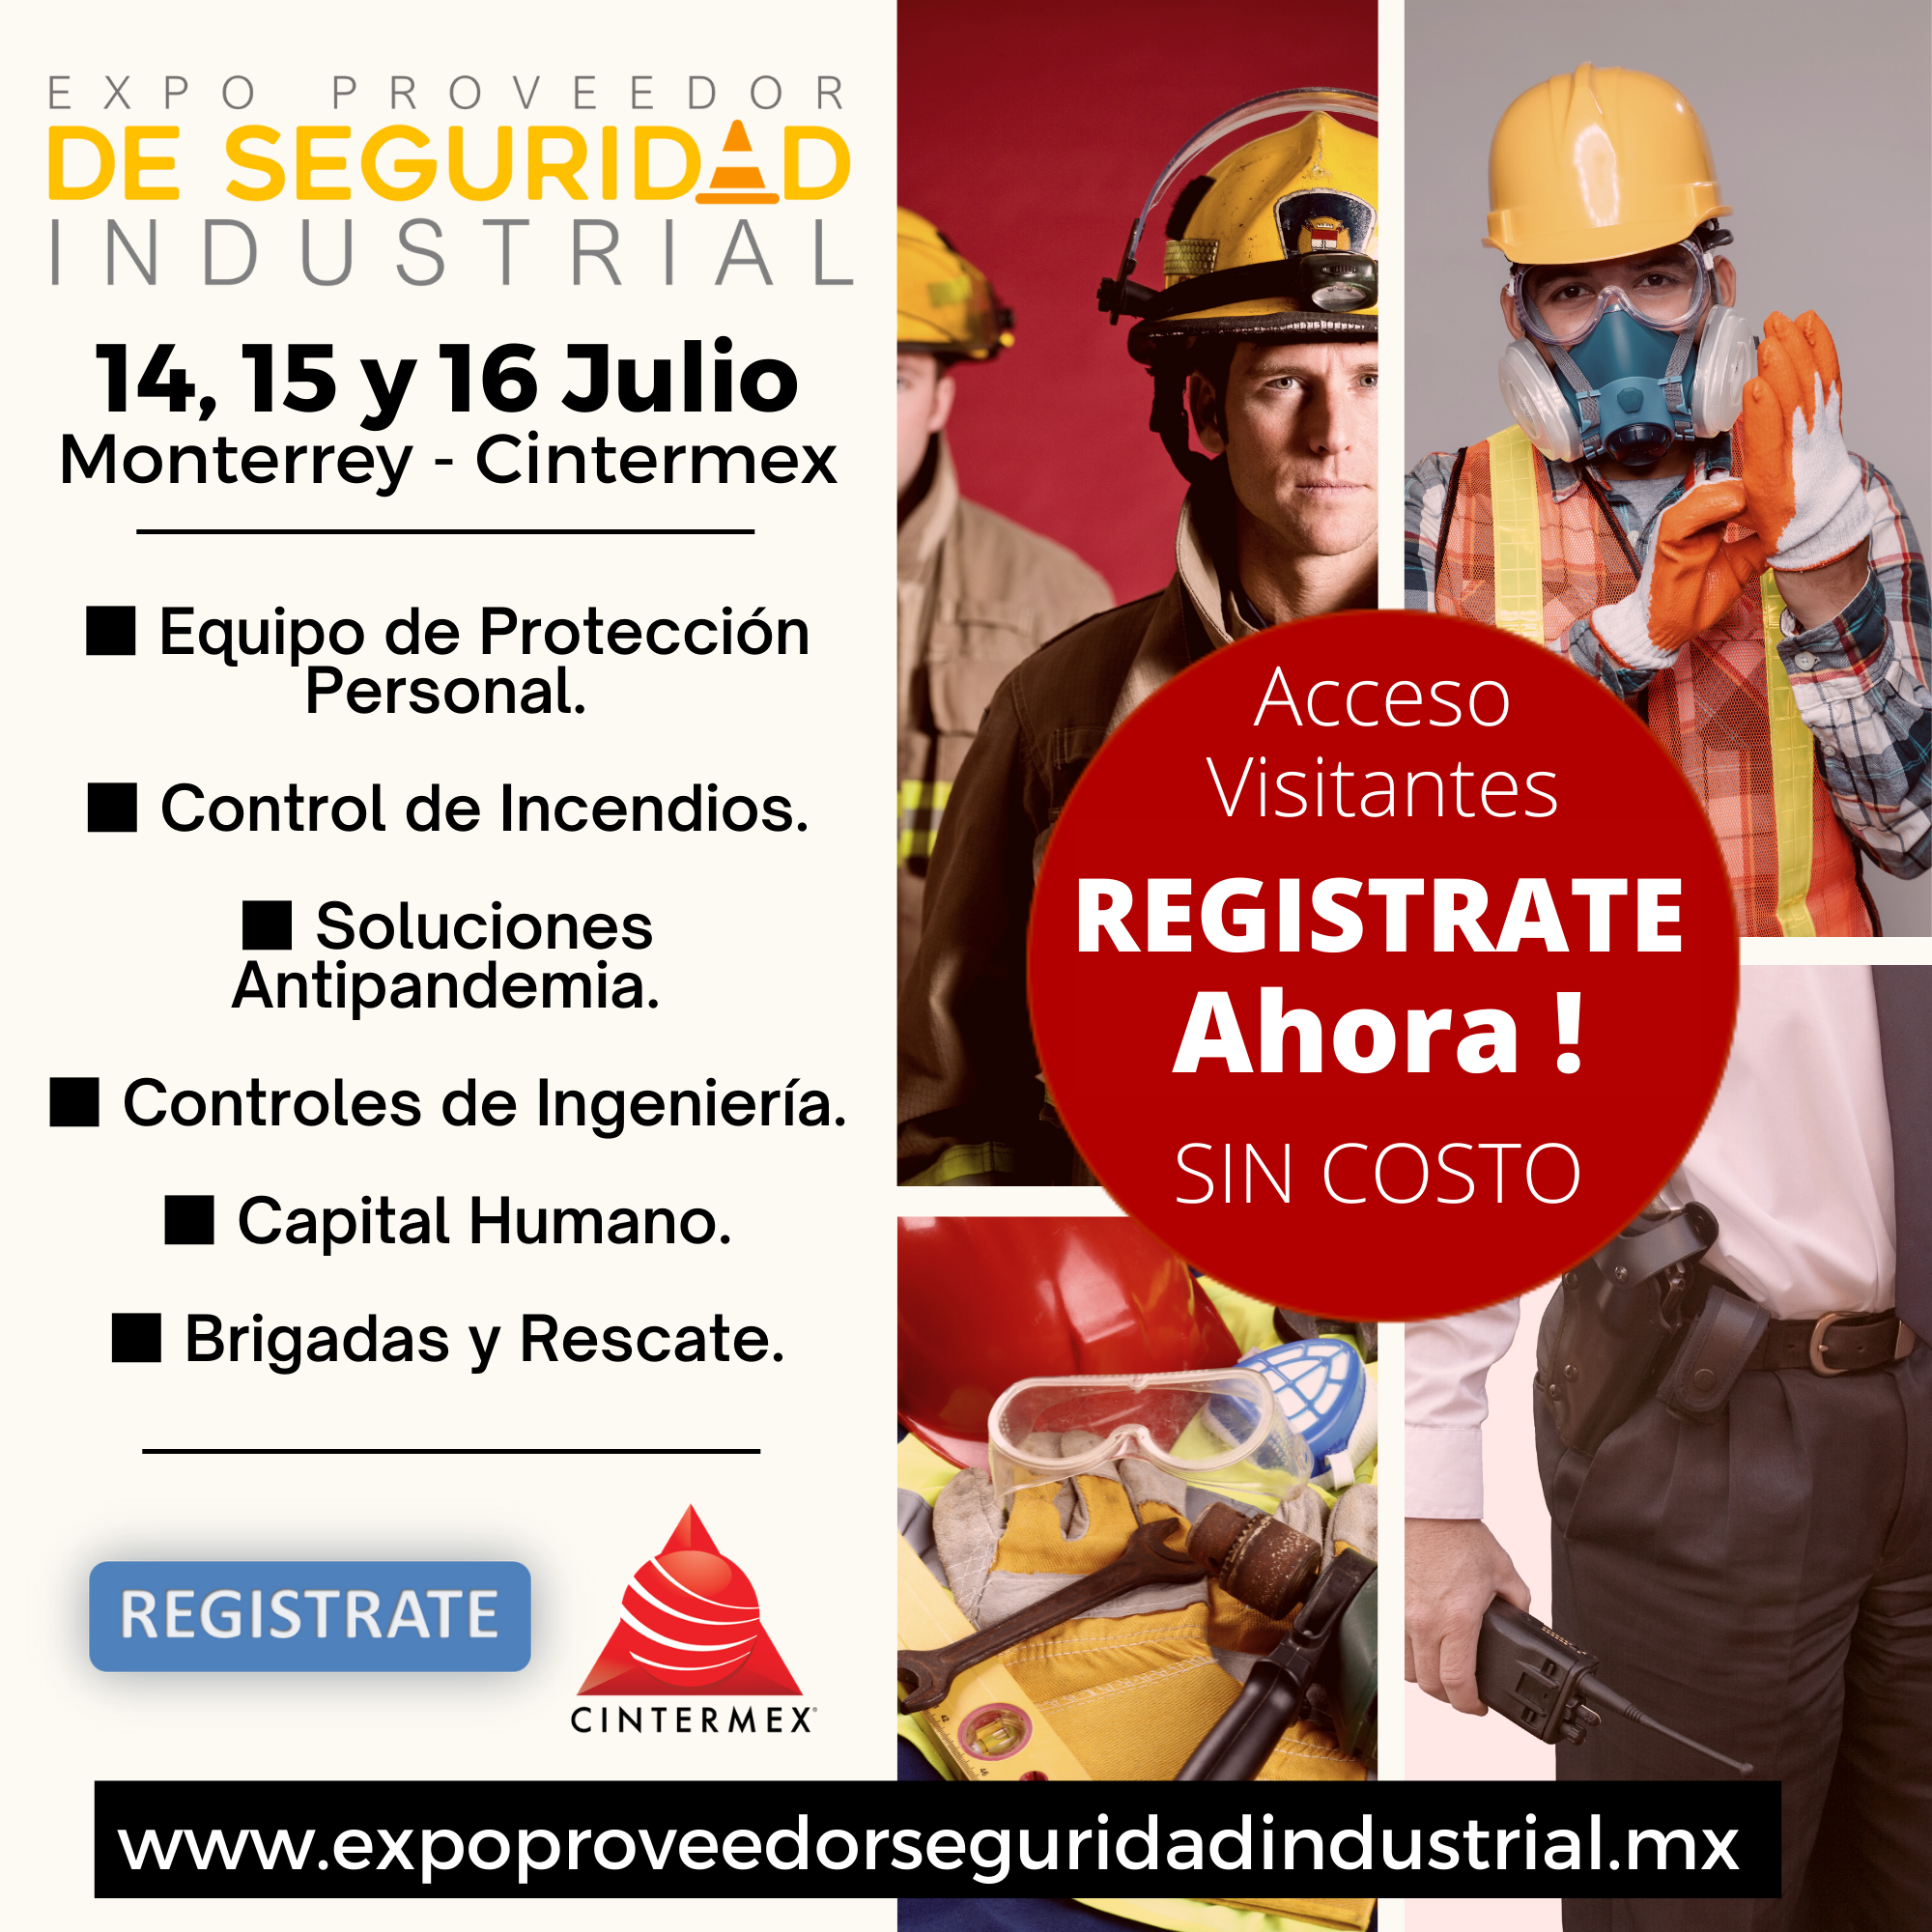 Expo Proveeedor de Seguridad Industrial Mexico Monterrey